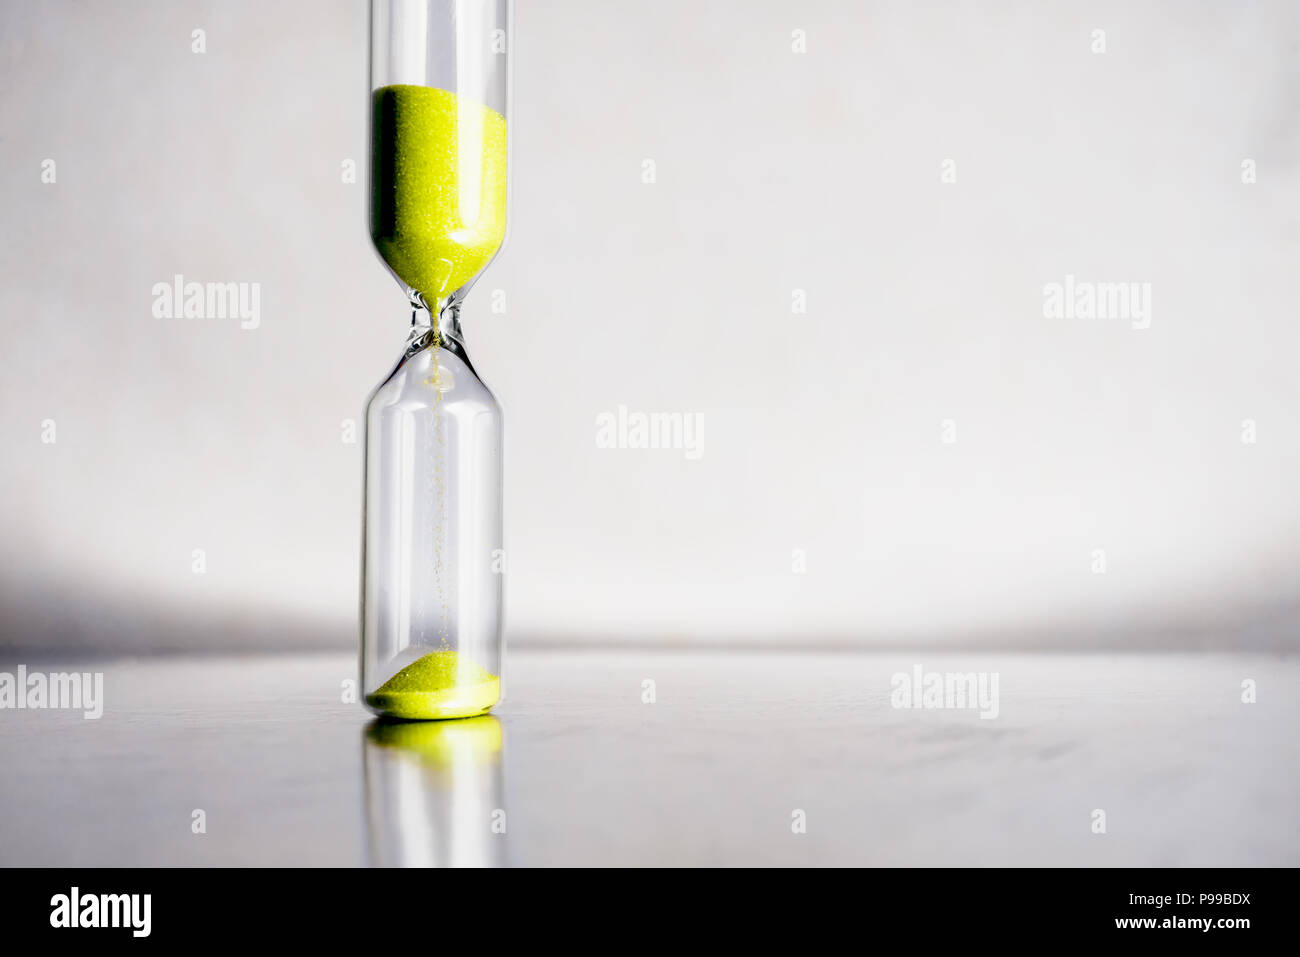 Moderne schöne gelbe Sanduhr mit hellen Hintergrund für Kopieren. Sanduhr der Zeit Konzept für die Frist, die Dringlichkeit und die Zeit läuft. Stockfoto